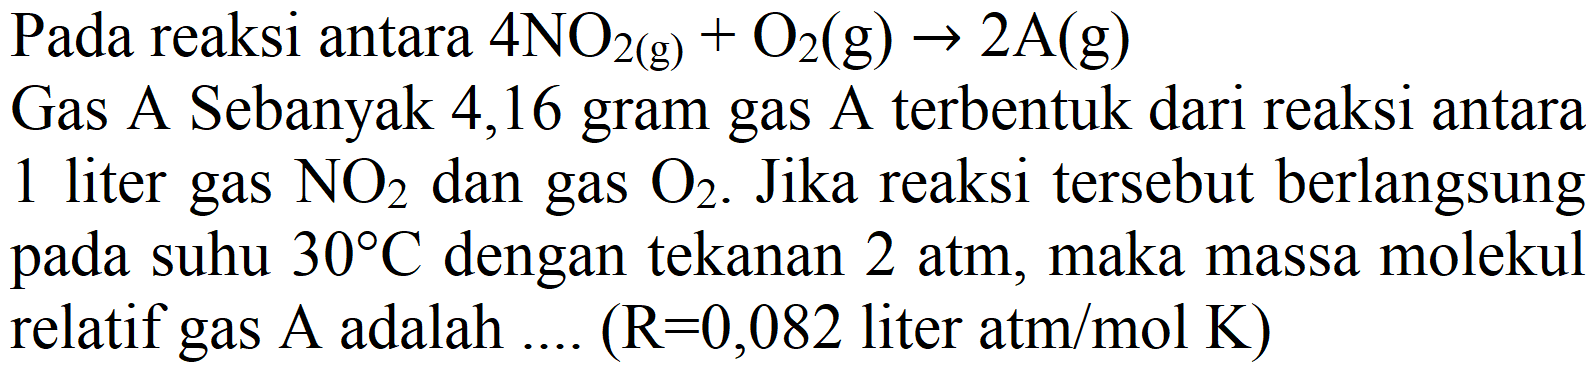 Pada reaksi antara 4NO2 (g) + O2 (g) -> 2A (g) Gas A Sebanyak 4,16 gram gas A terbentuk dari reaksi antara 1 liter gas NO2 dan gas O2. Jika reaksi tersebut berlangsung pada suhu 30 C dengan tekanan 2 atm, maka massa molekul relatif gas A adalah .... (R=0,082 liter atm/mol K)